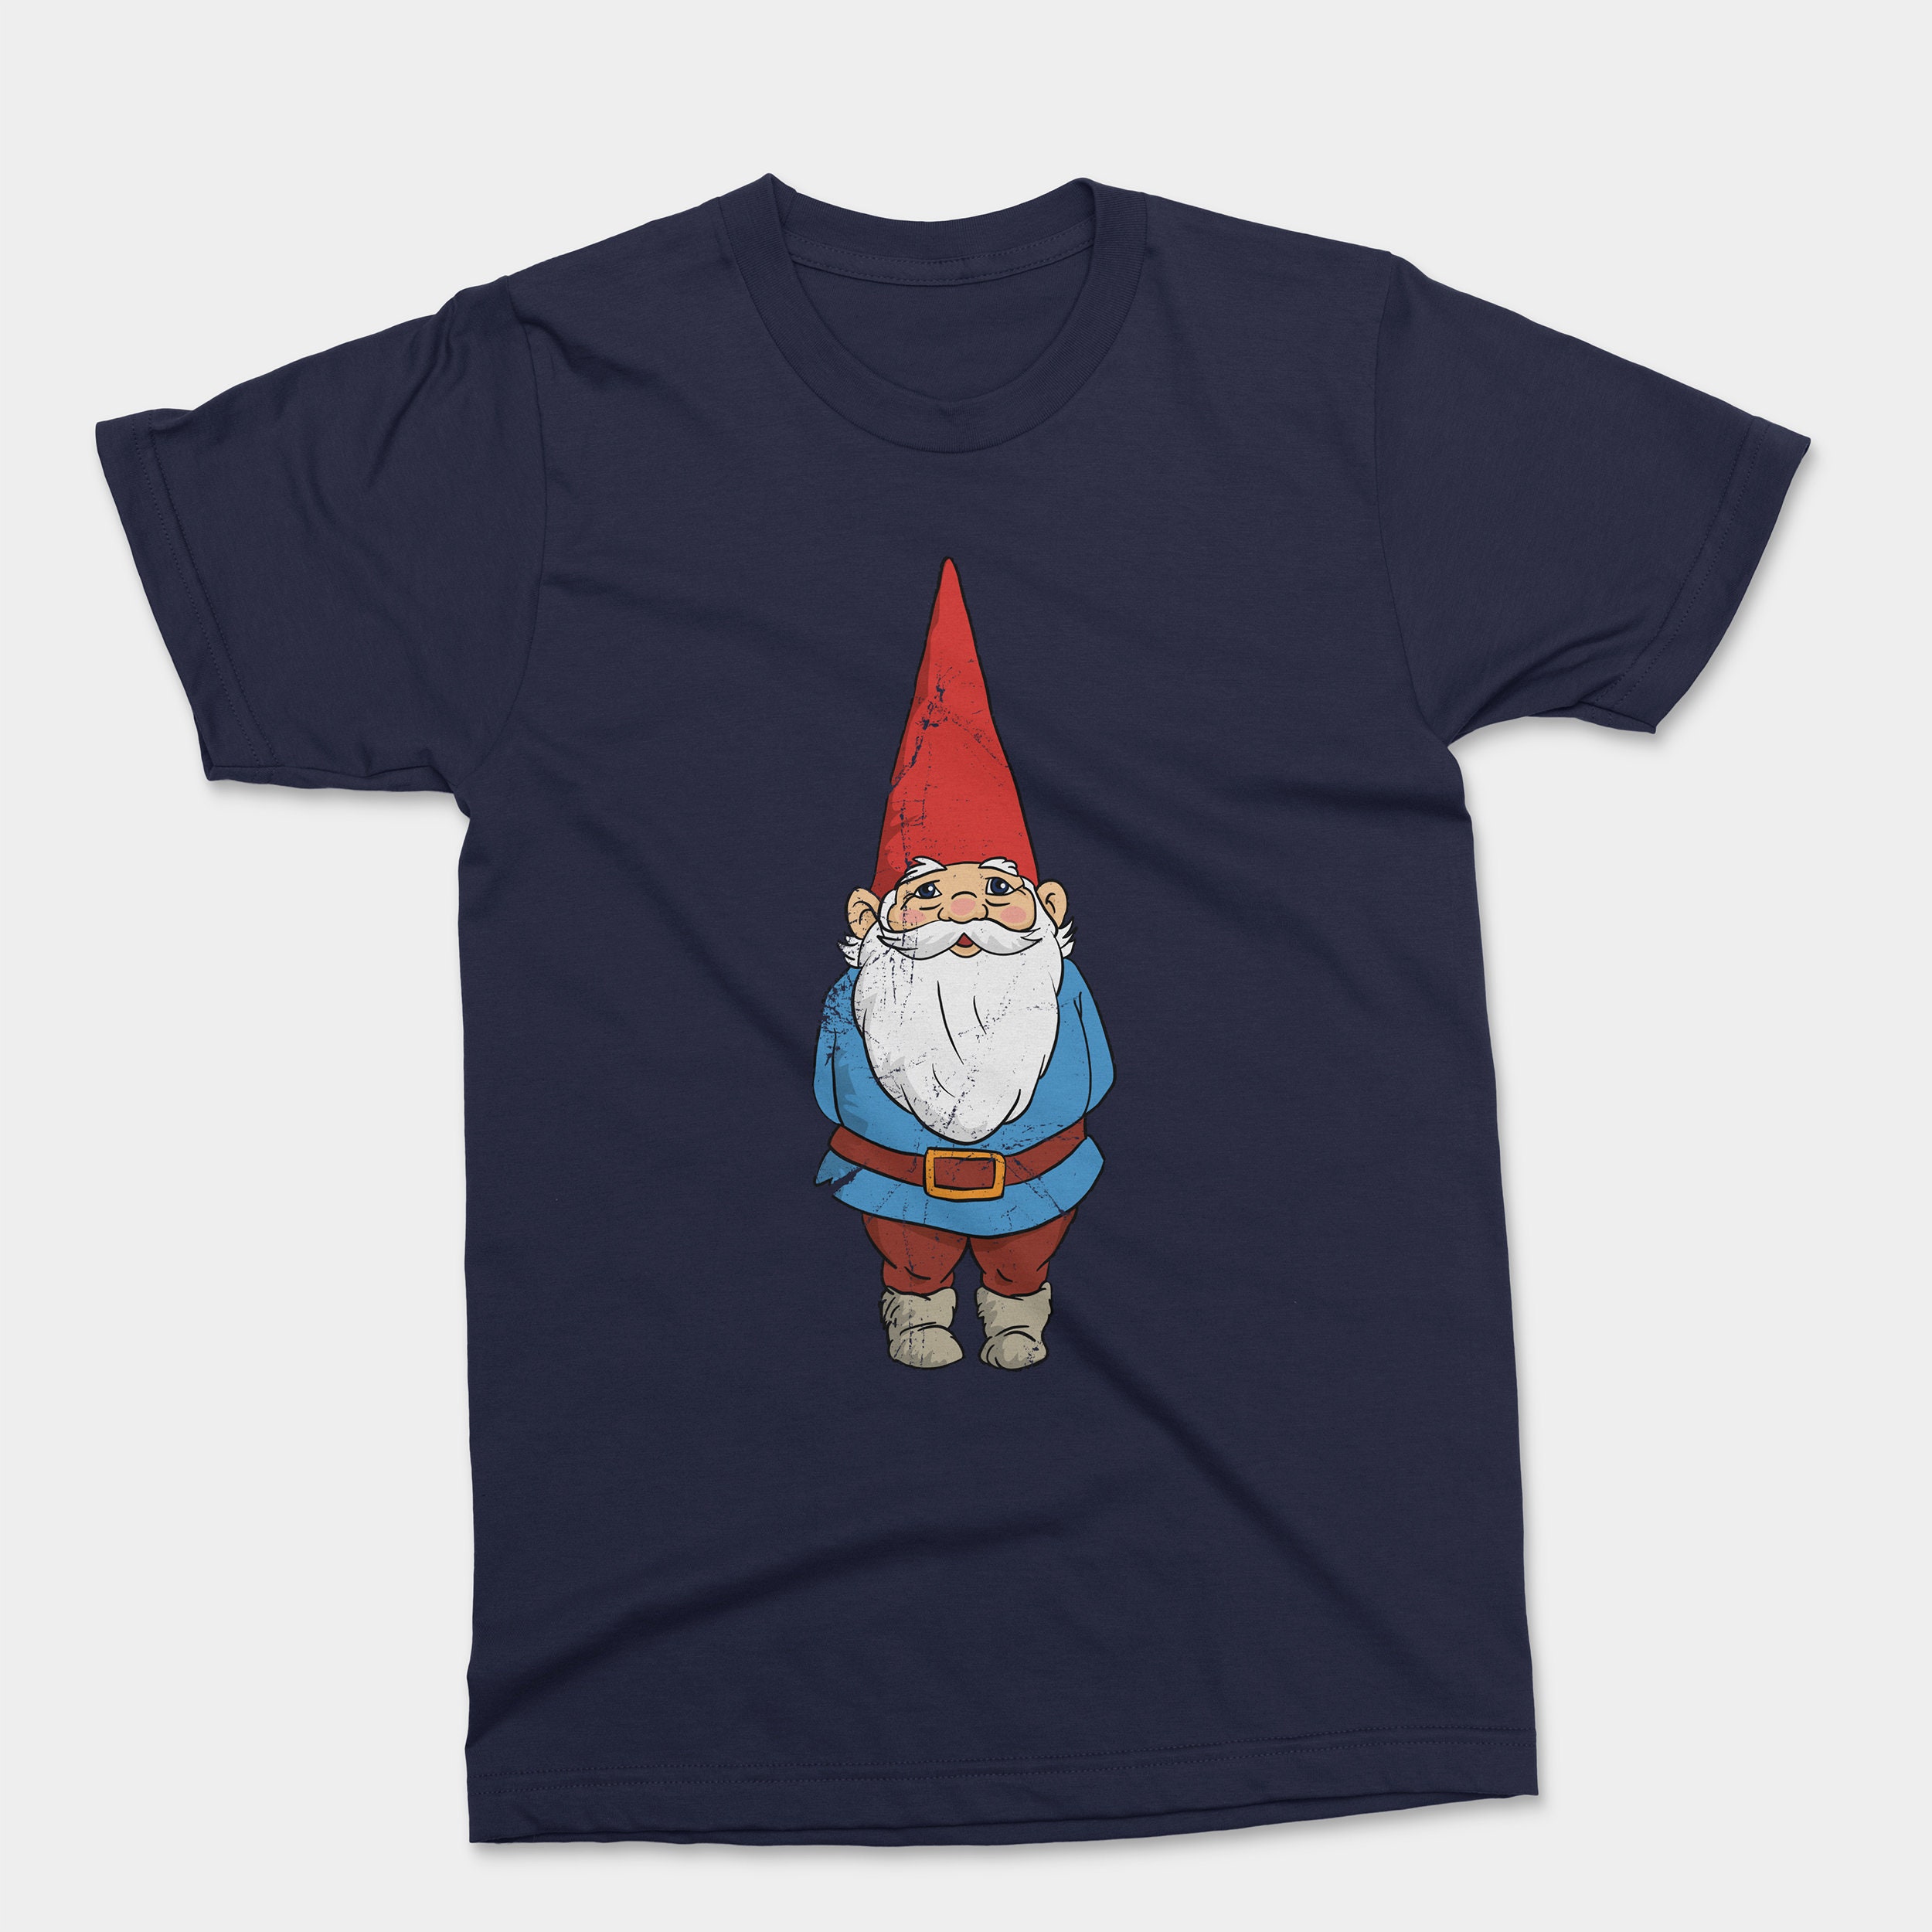 David the Gnome Shirt Classic 80s Cartoon - Etsy